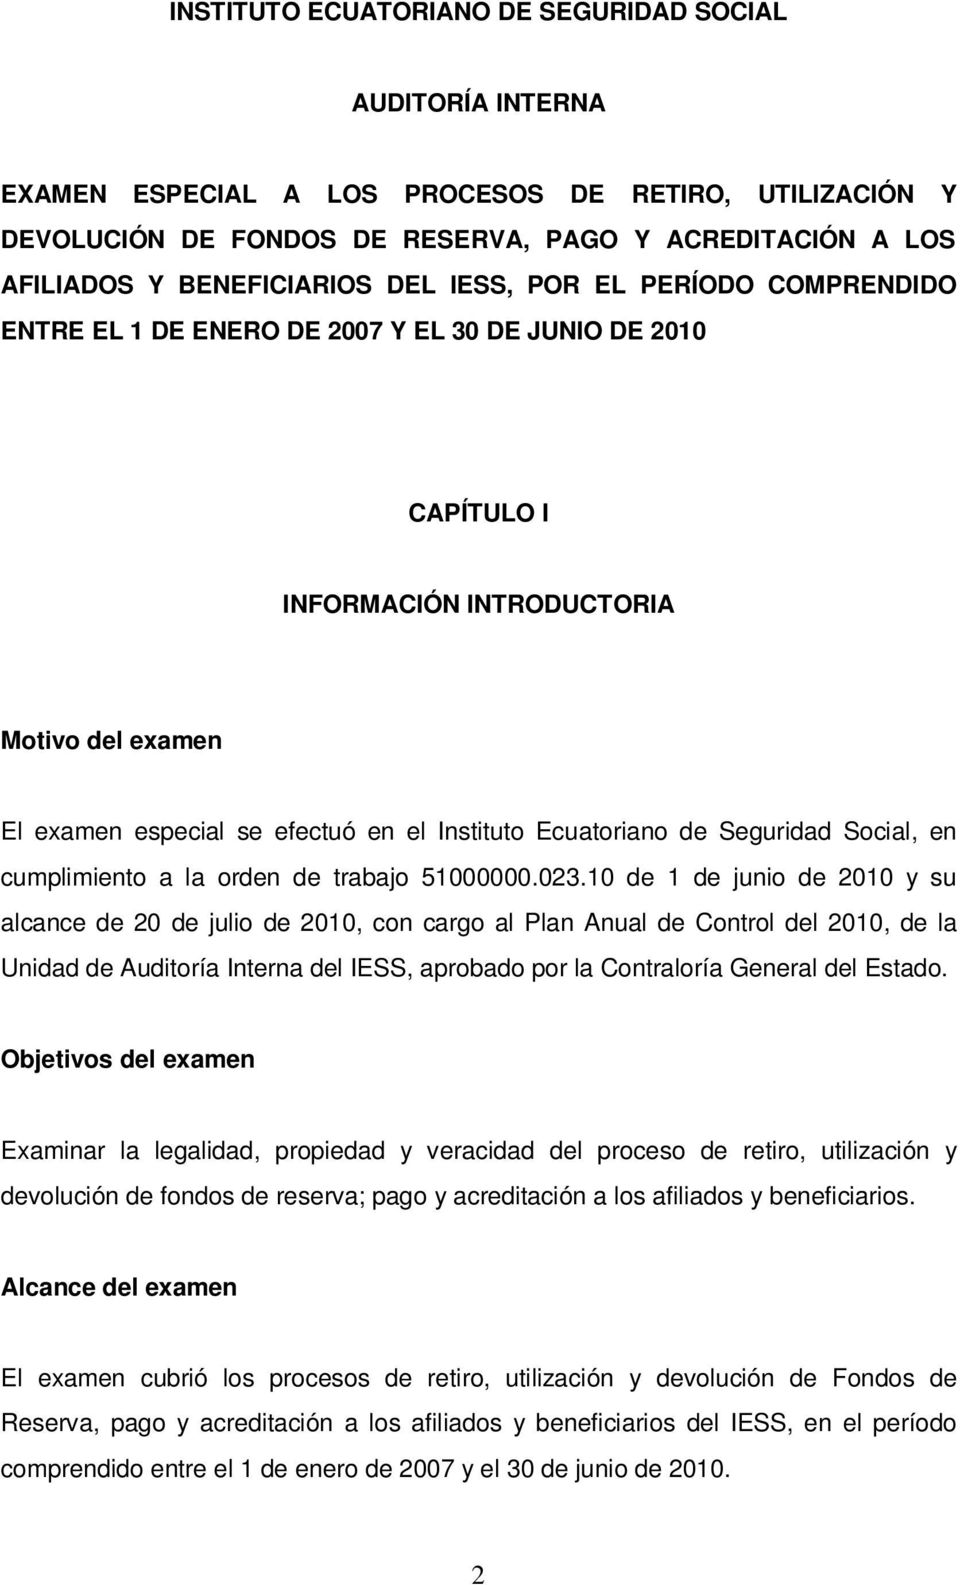 Instituto Ecuatoriano de Seguridad Social, en cumplimiento a la orden de trabajo 51000000.023.